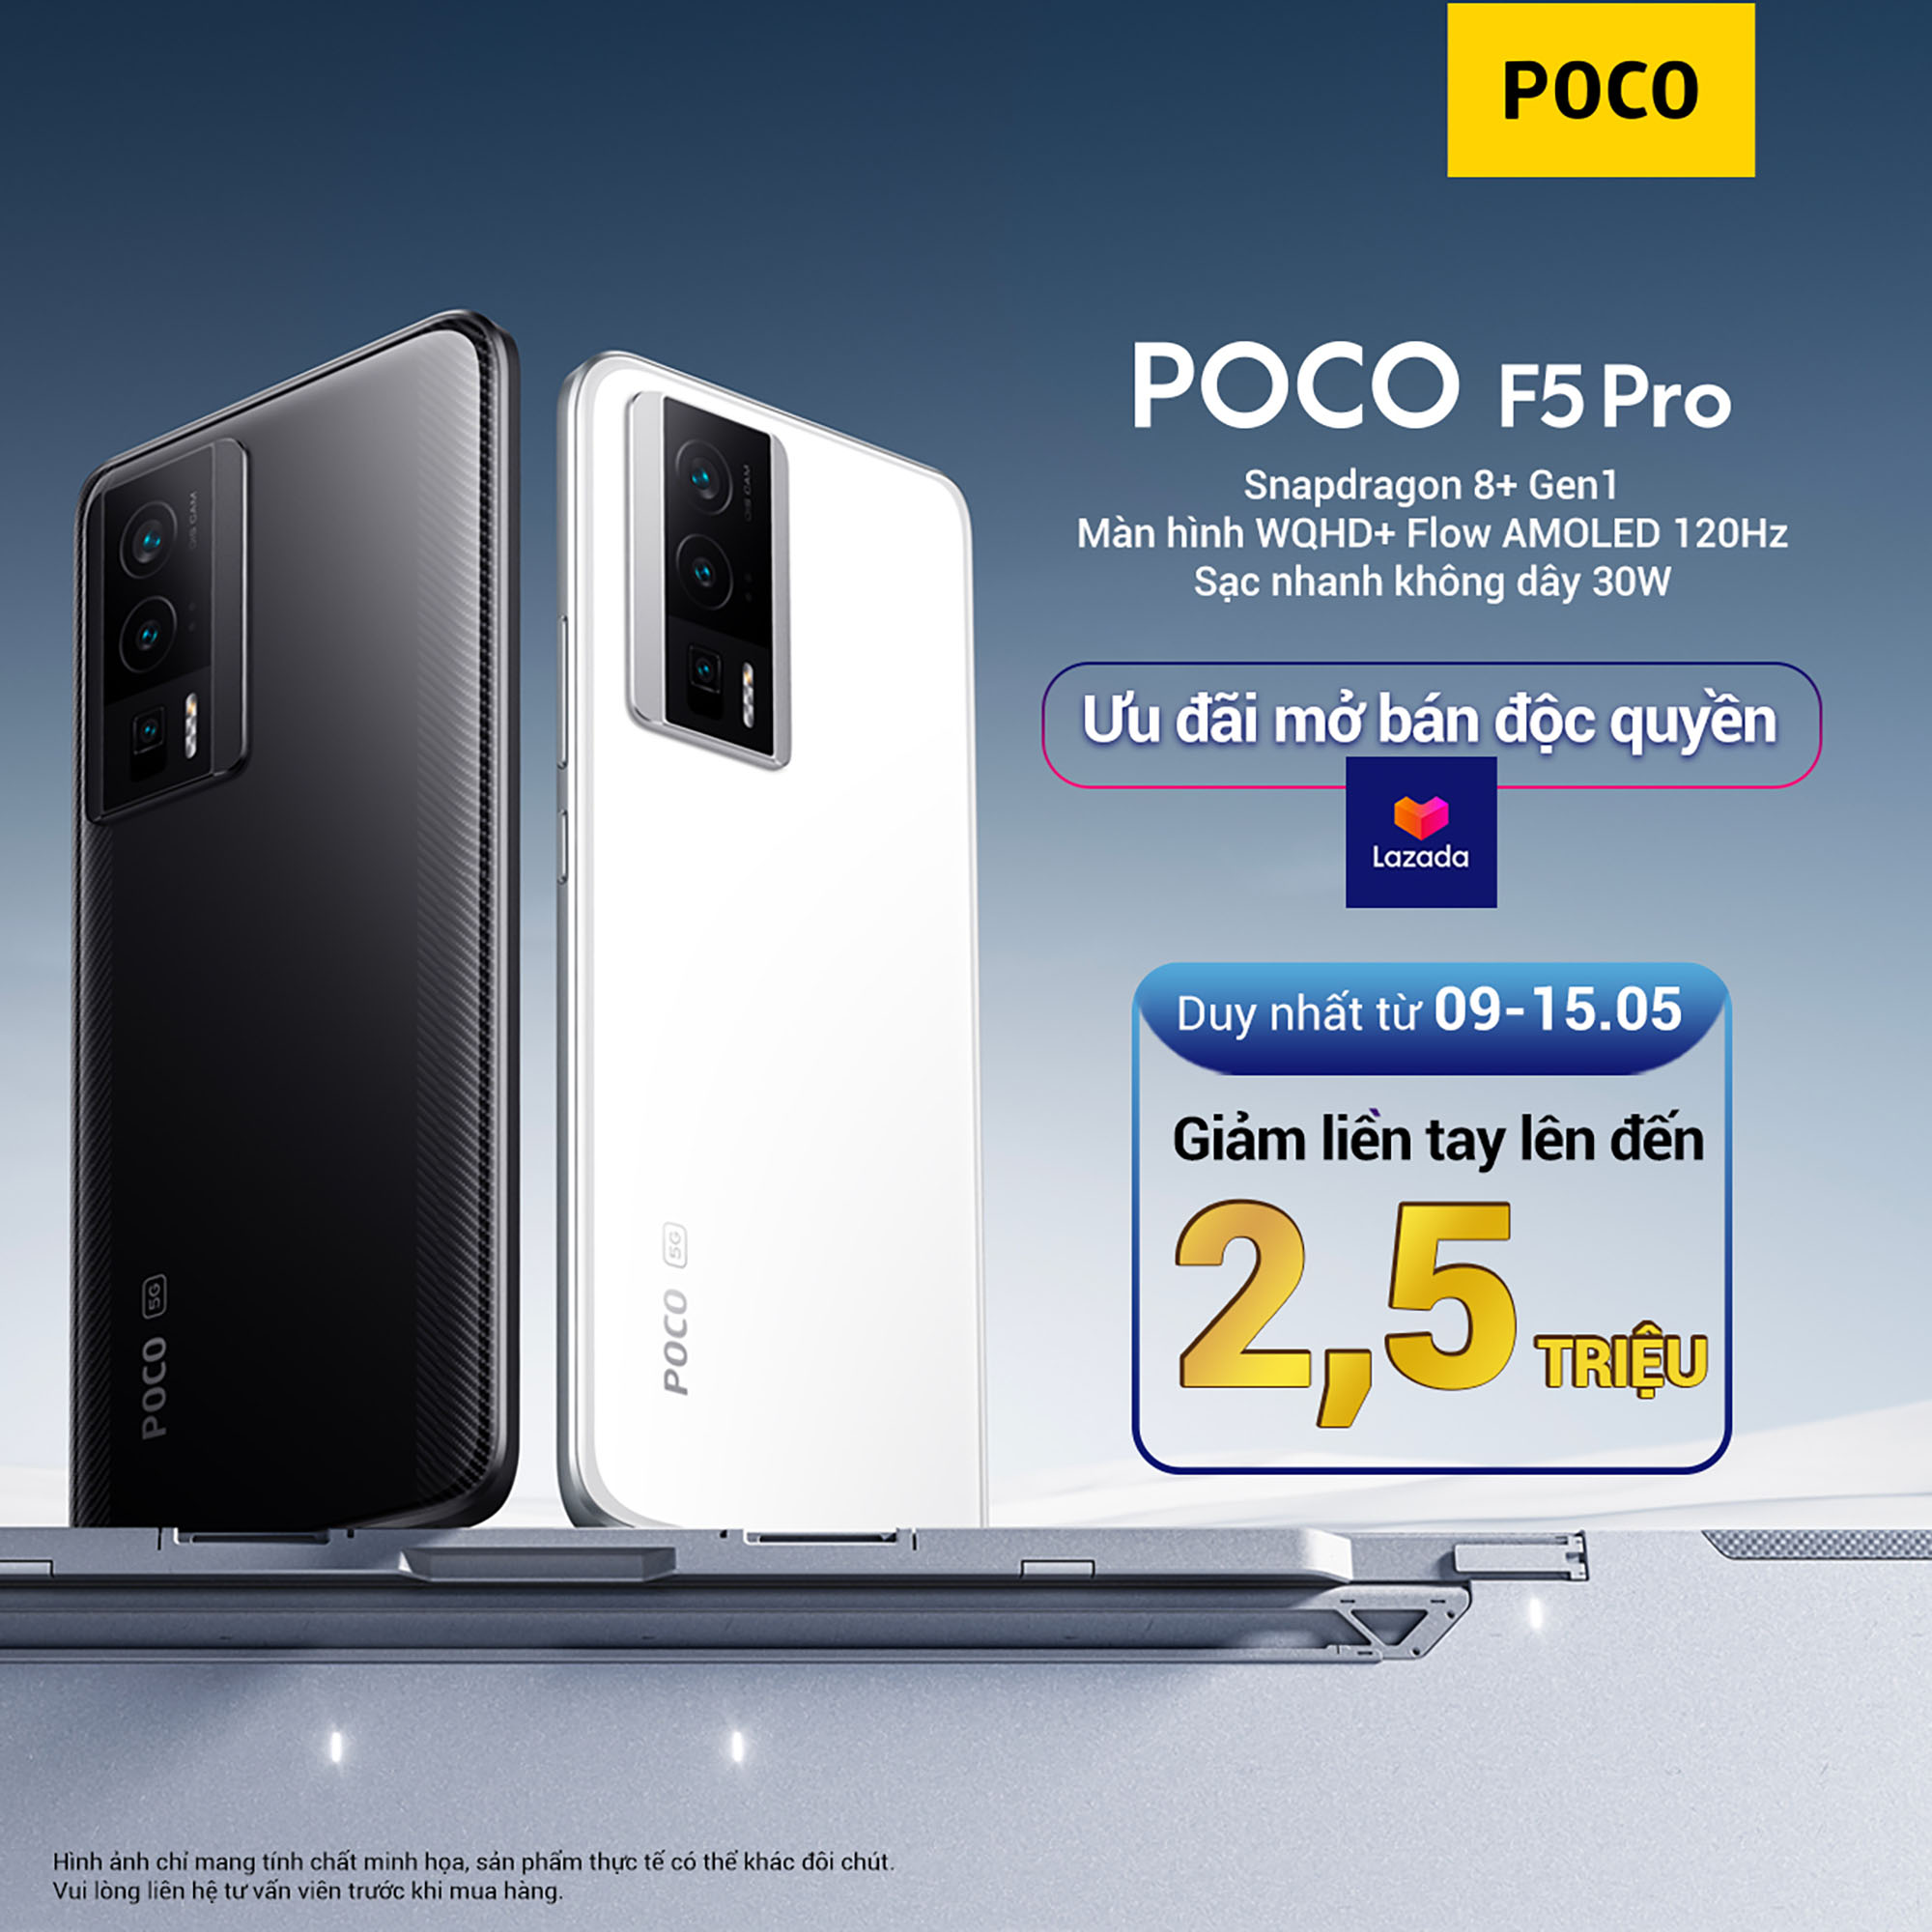 Ra mắt POCO F5 Pro chính hãng: Màn hình 2K+, chip Snapdragon 8+ Gen 1 giá rẻ nhất - Ảnh 3.